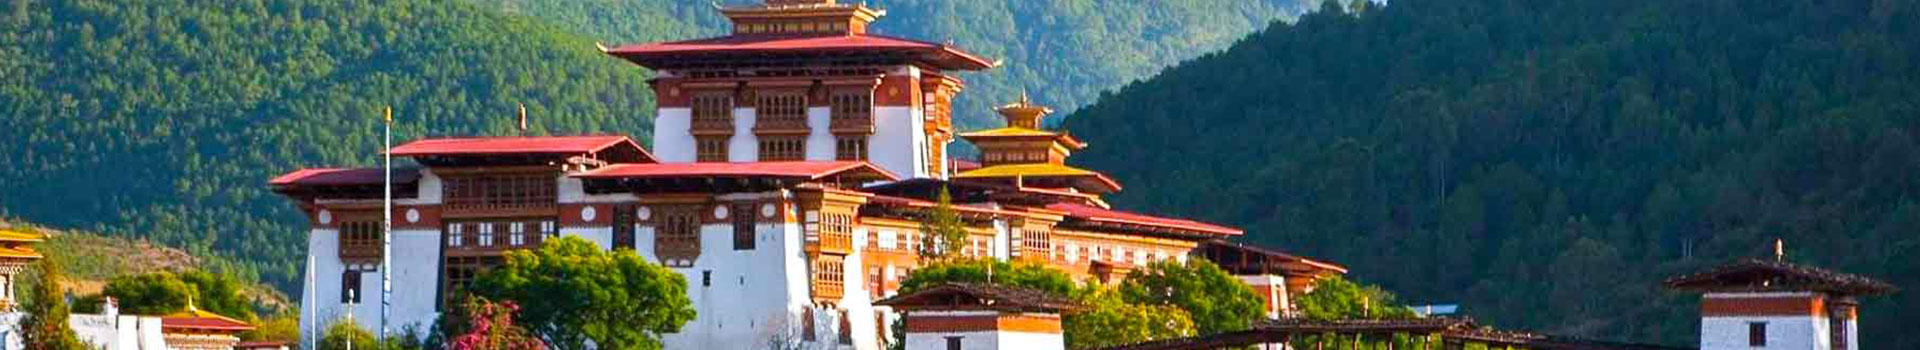 MAGNIFICENT BHUTAN TOUR